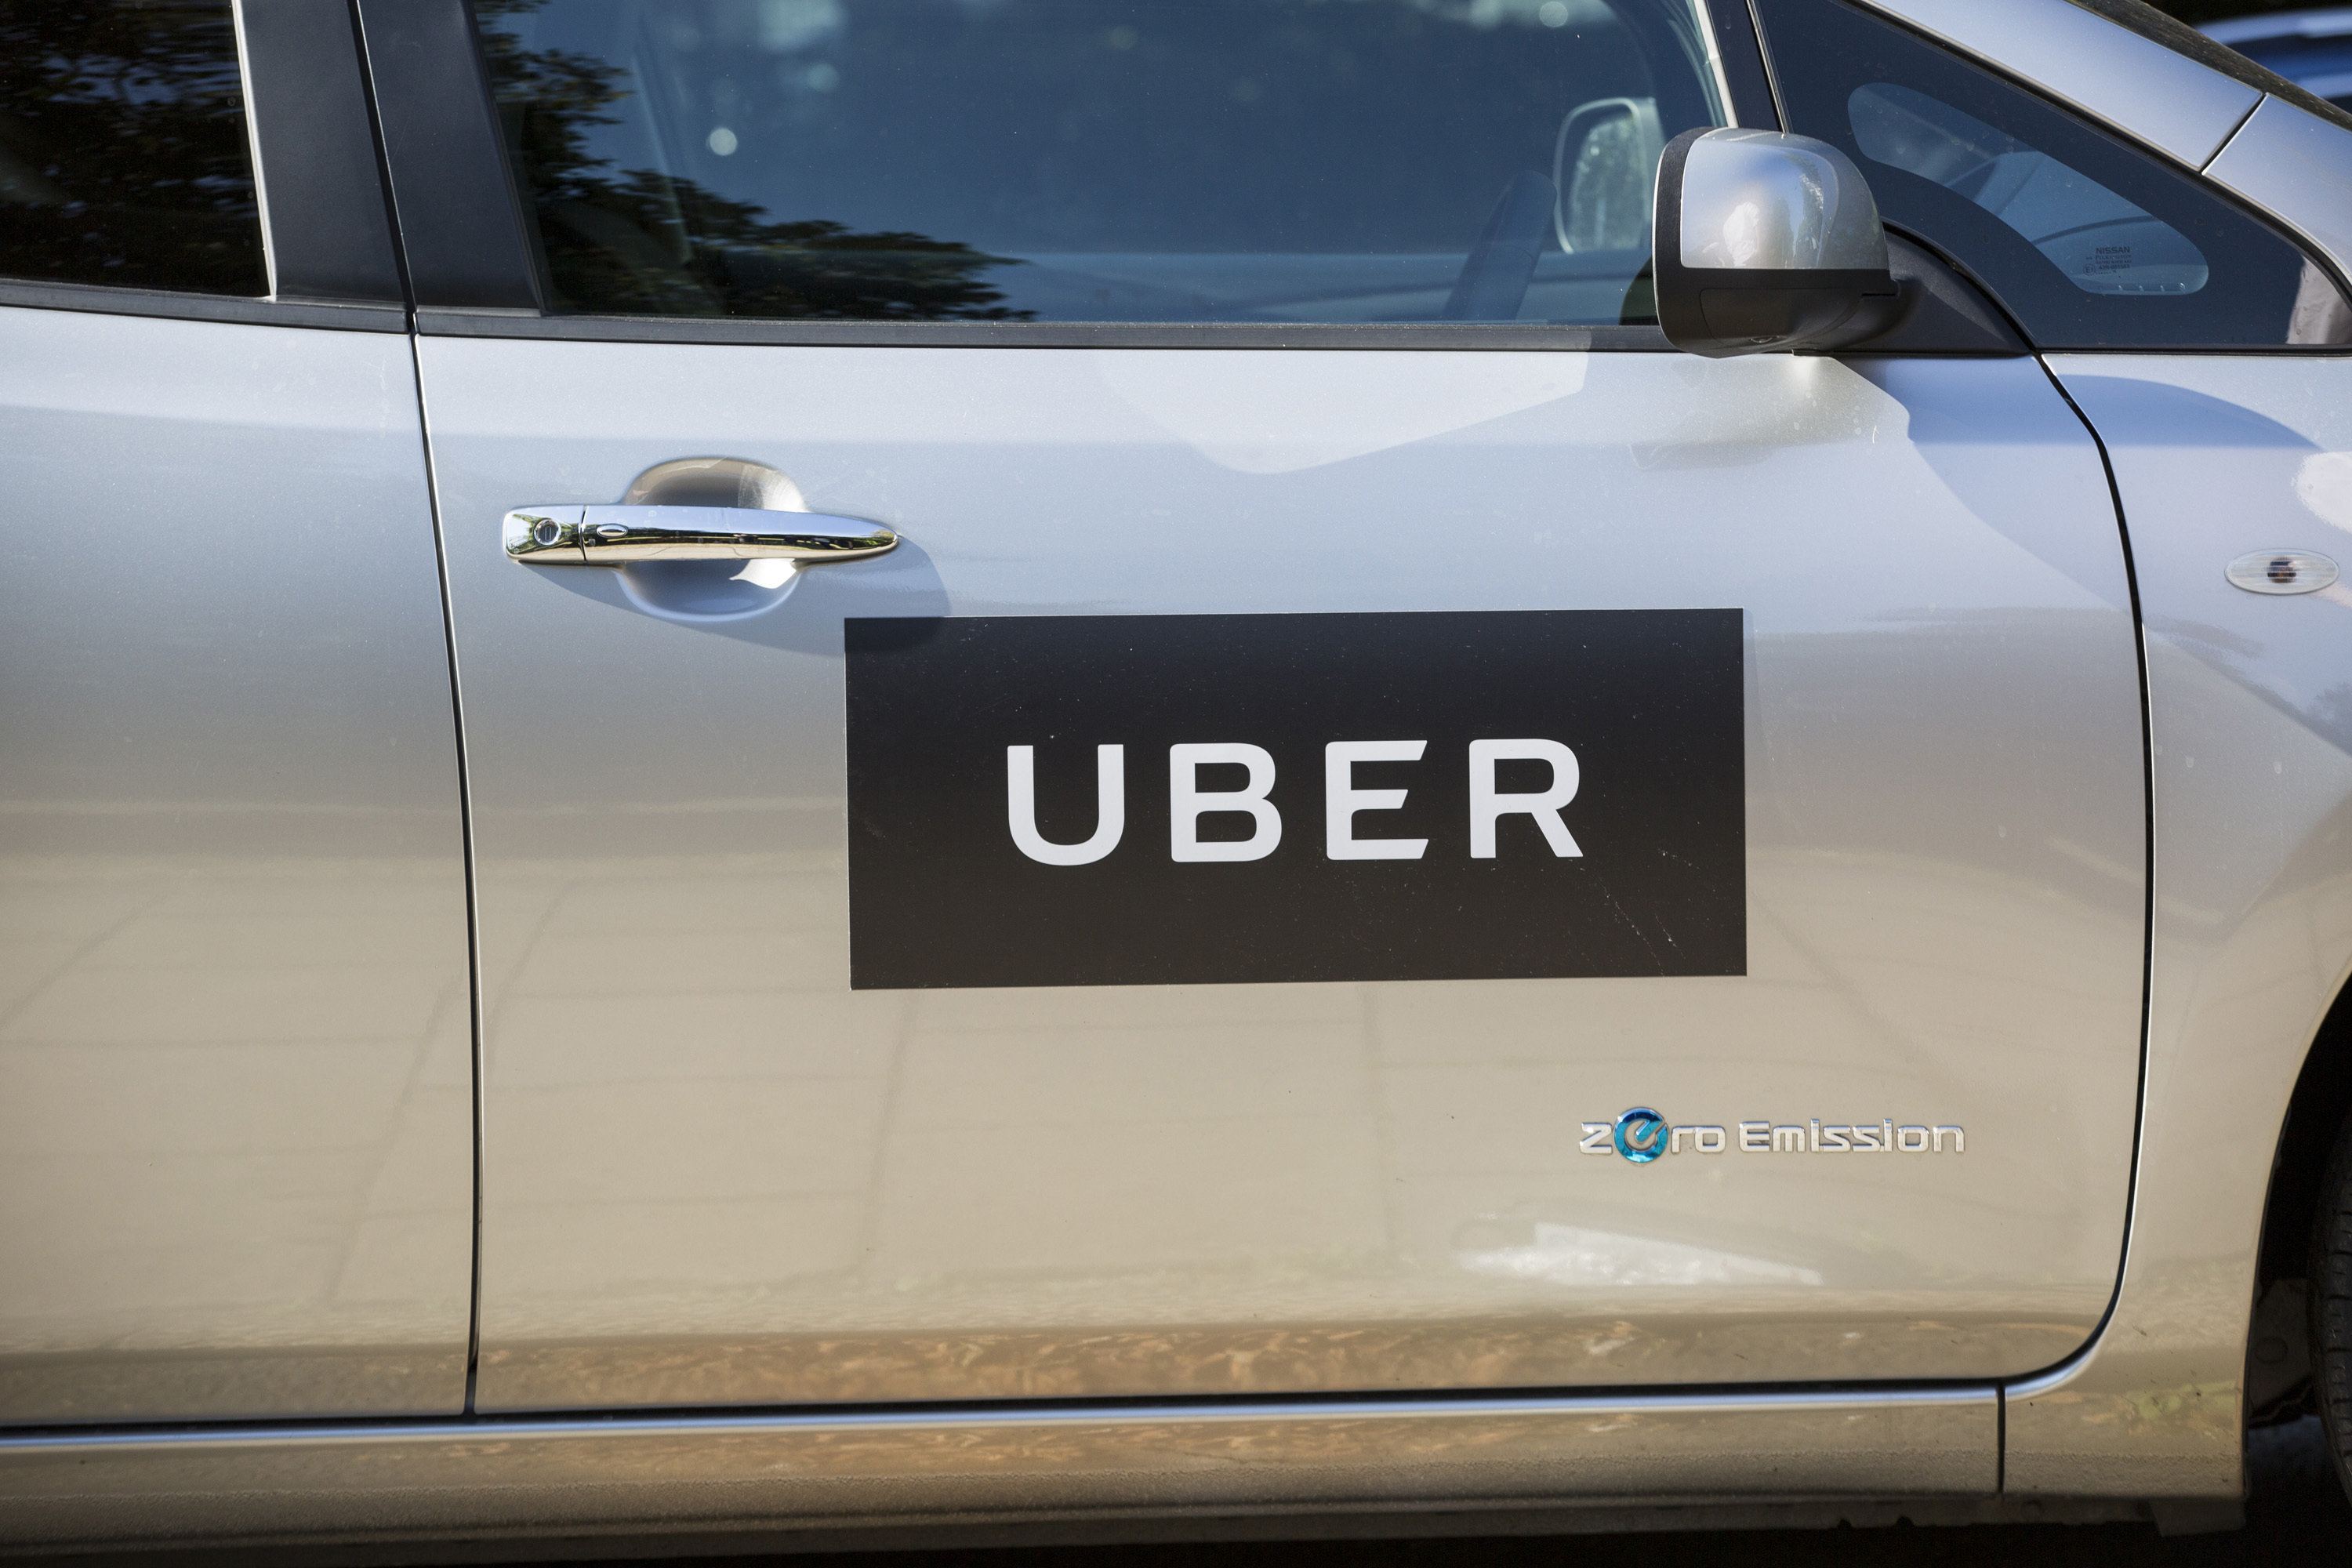 Uber has been dealt a fresh regulatory blow